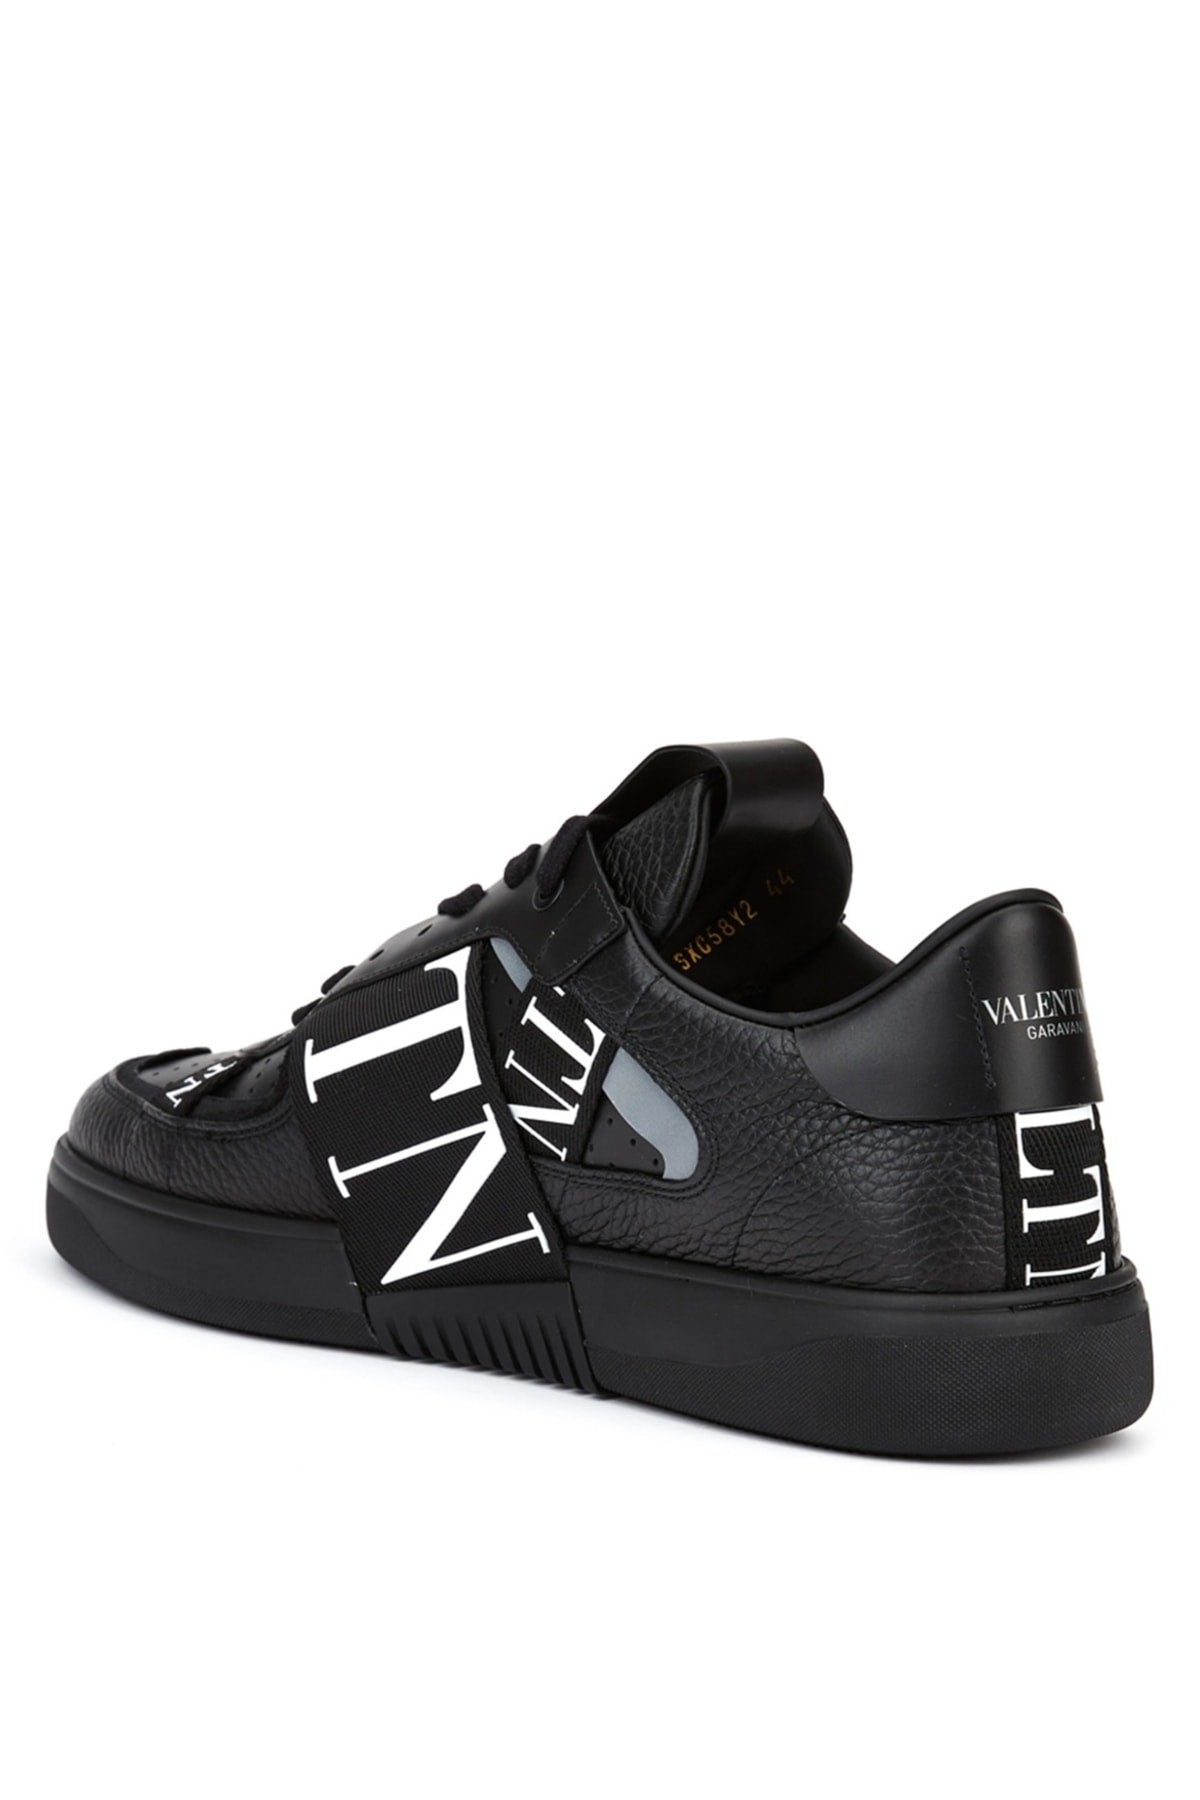 Vl7n Low-top Sneakers